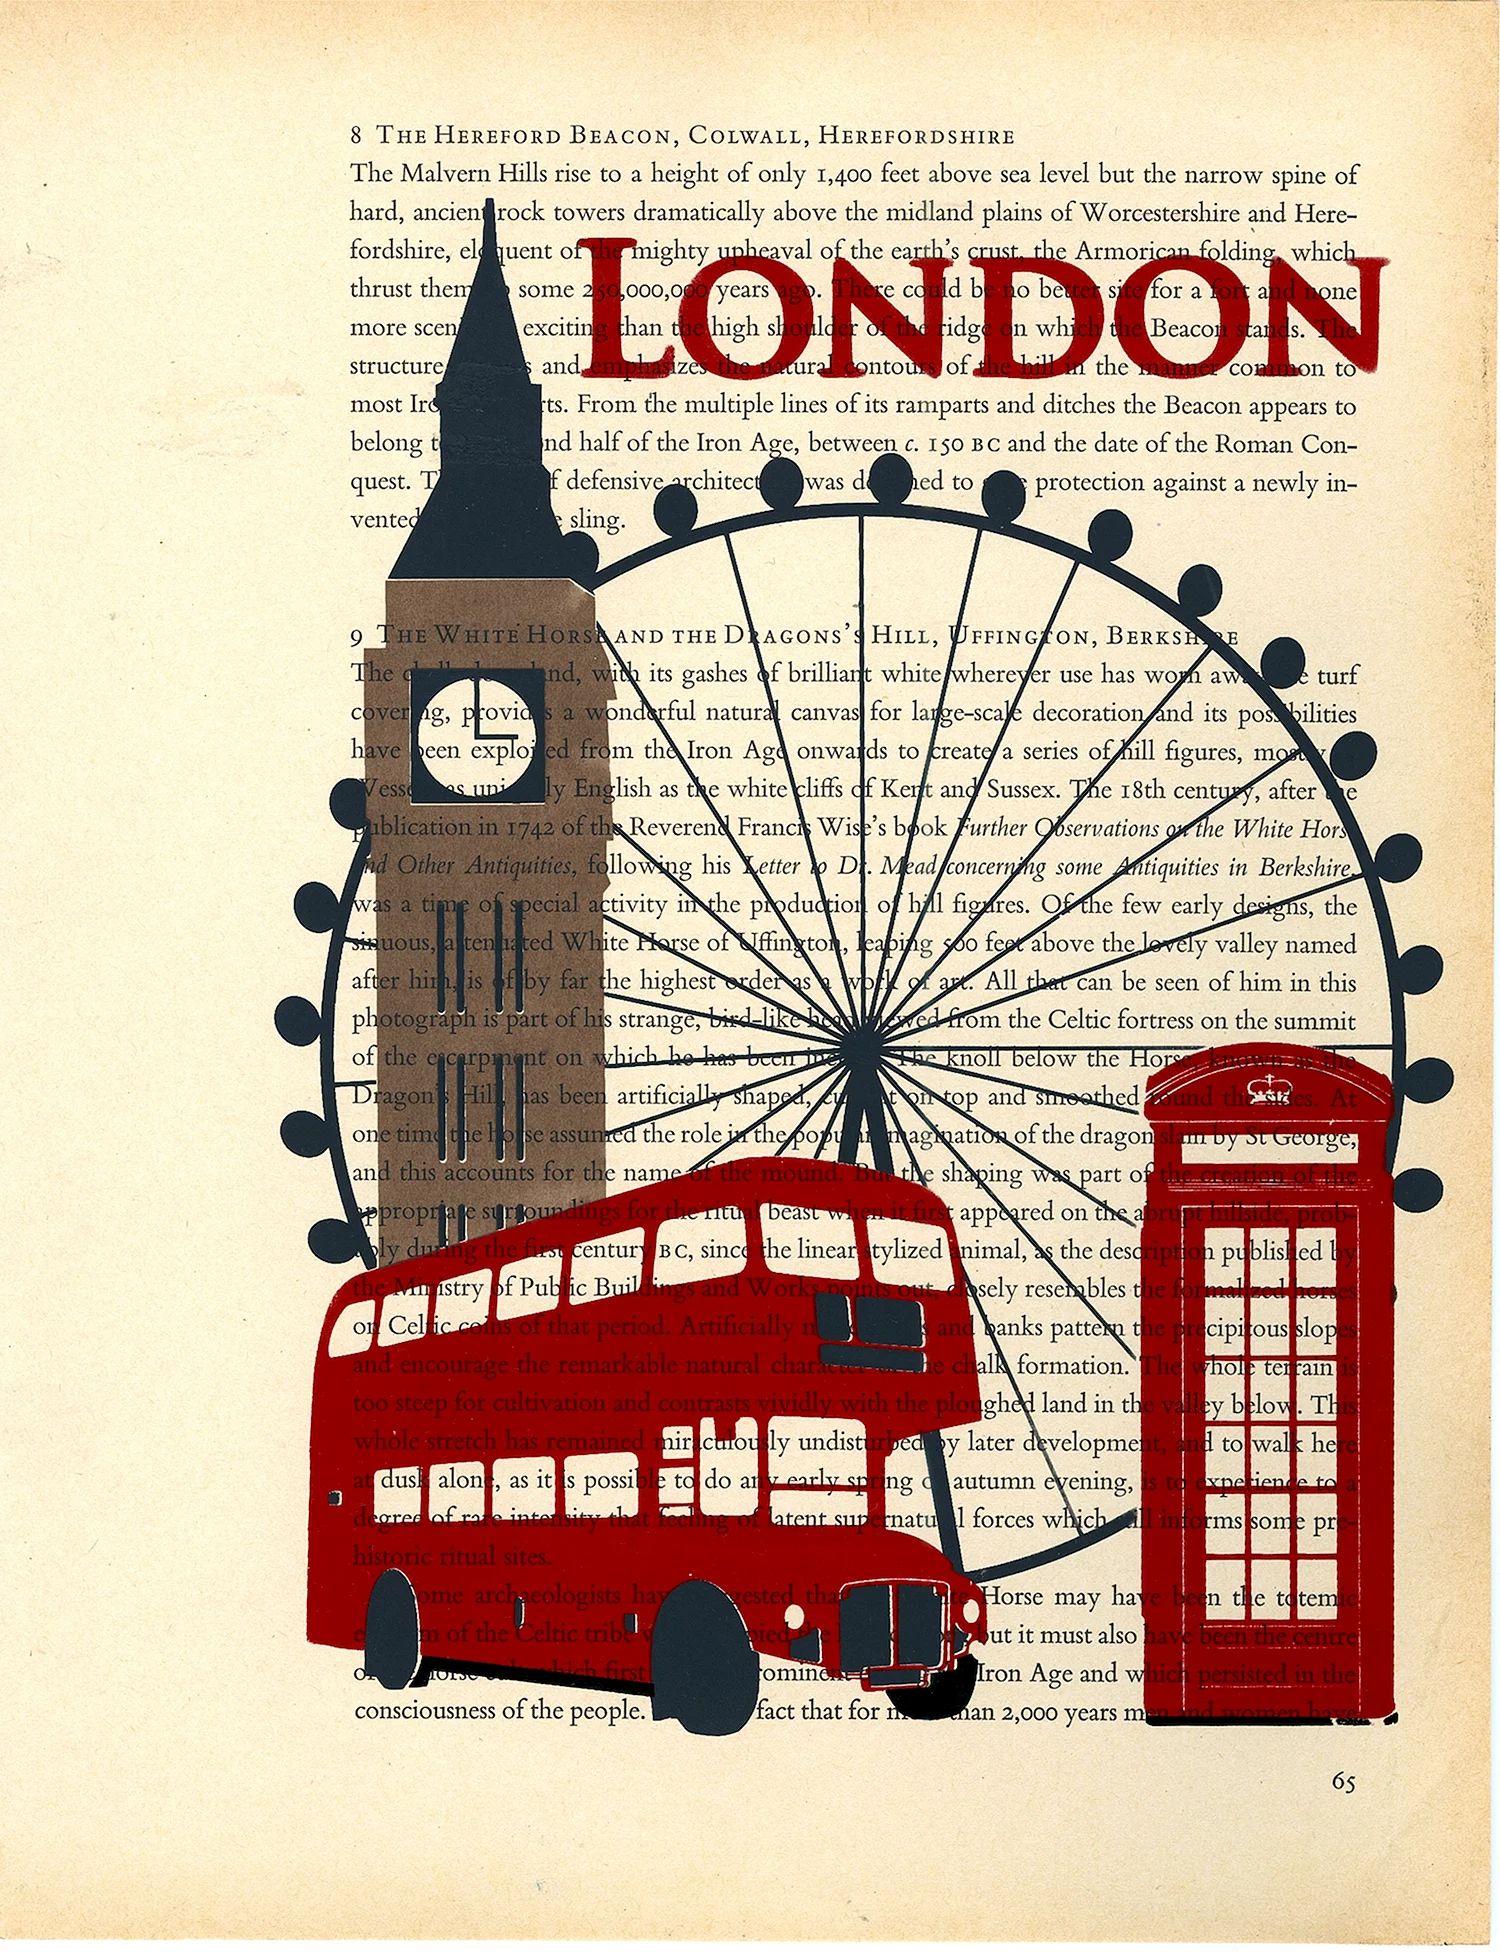 Лондон плакат